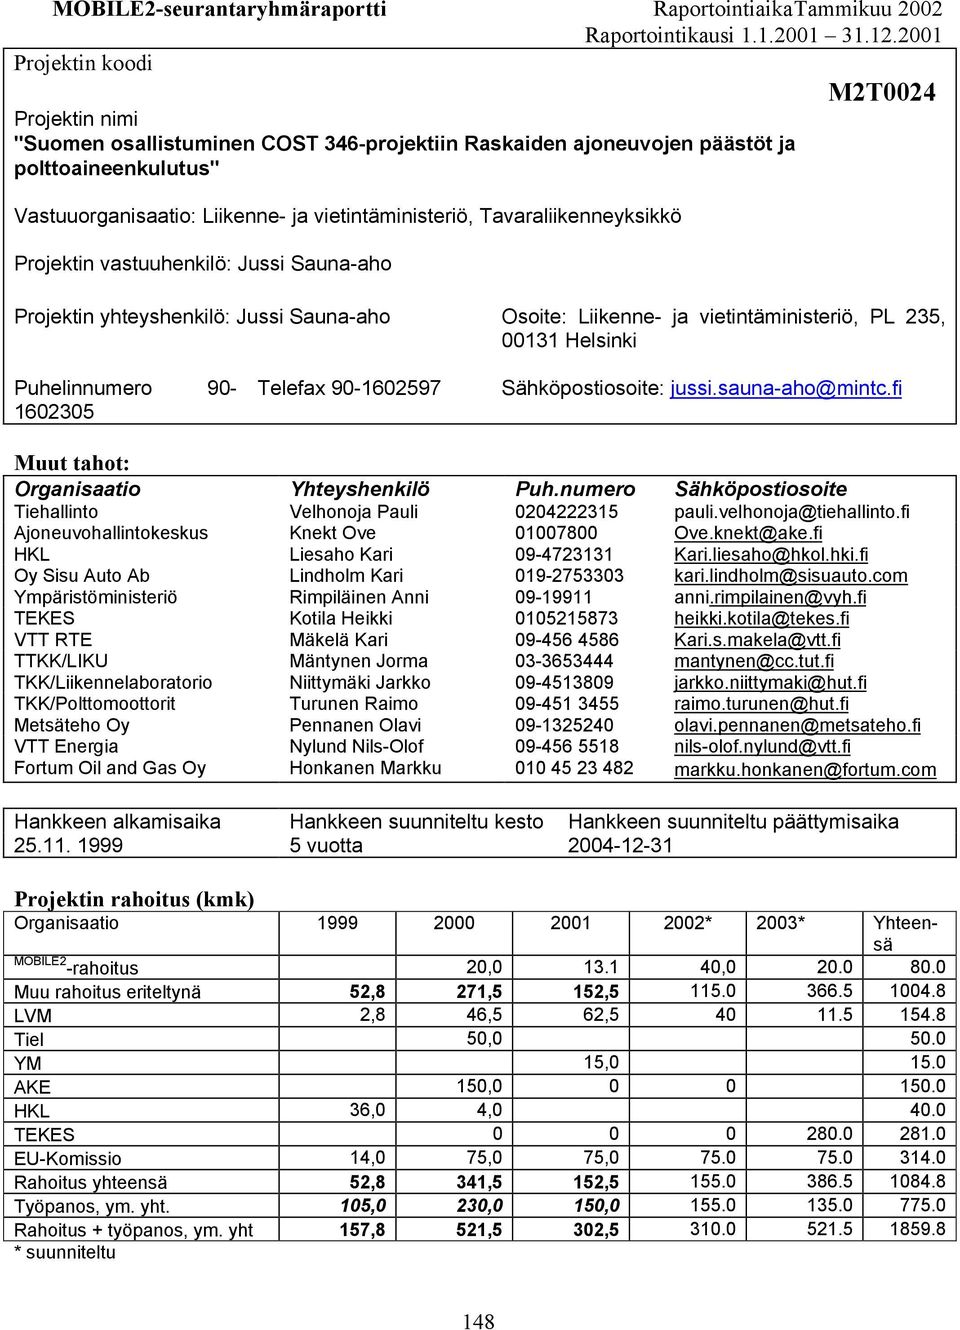 Tavaraliikenneyksikkö Projektin vastuuhenkilö: Jussi Sauna-aho Projektin yhteyshenkilö: Jussi Sauna-aho Osoite: Liikenne- ja vietintäministeriö, PL 235, 00131 Helsinki Puhelinnumero 90-1602305